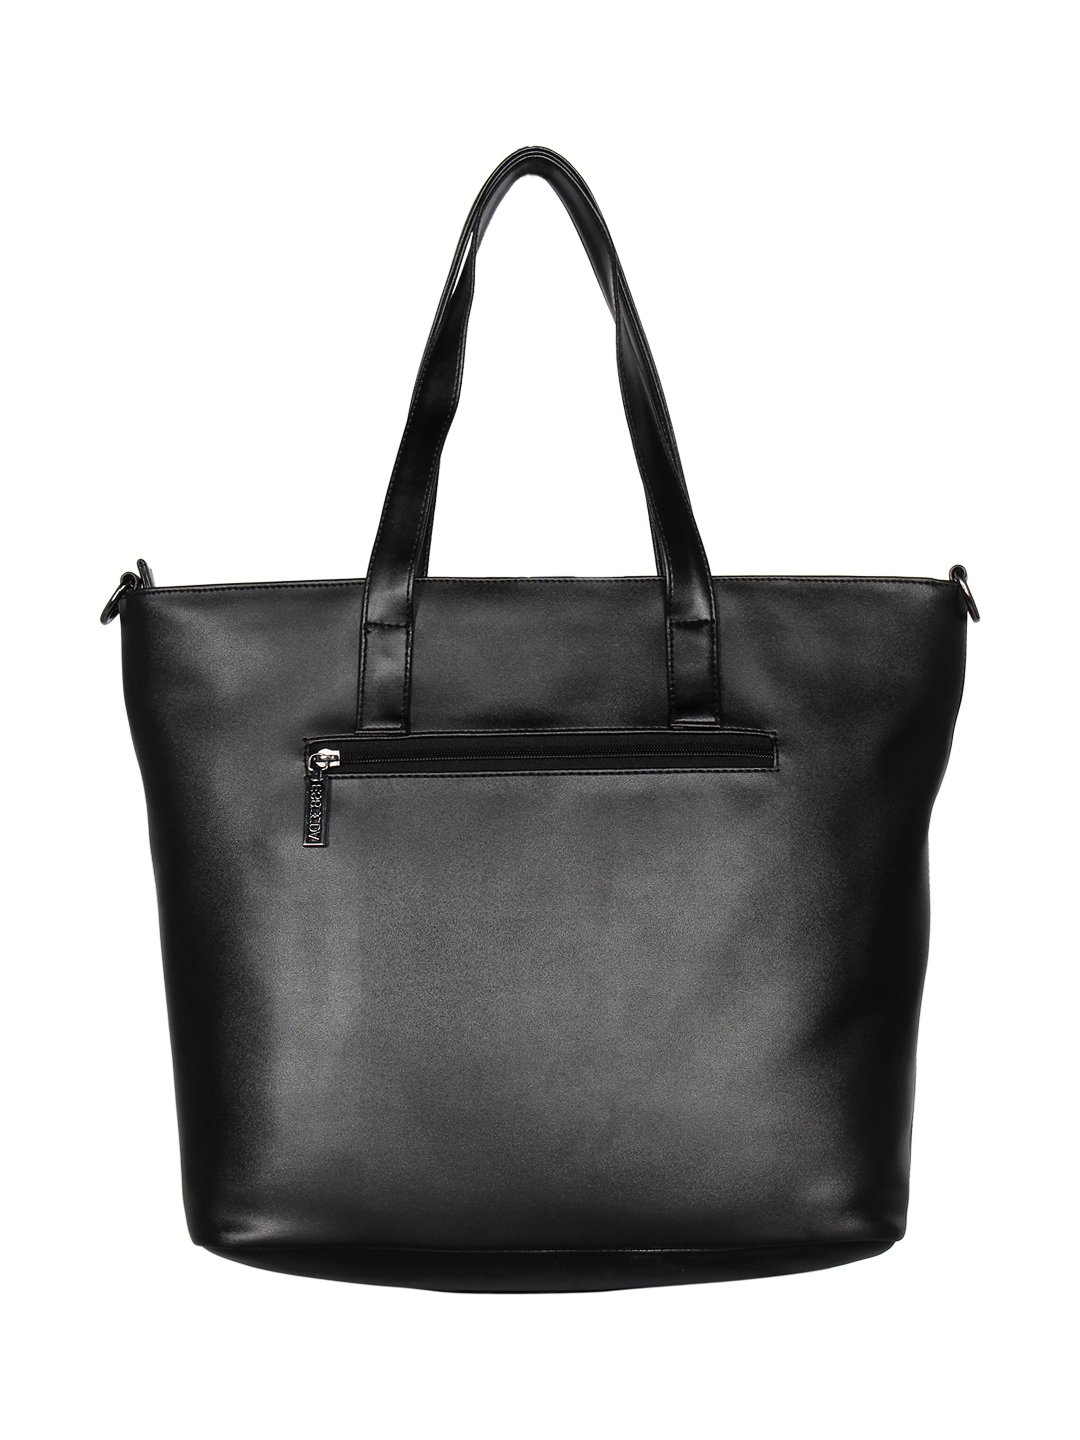 ESBEDA Black Color Solid Stripe Handbag For Women - ESBEDA